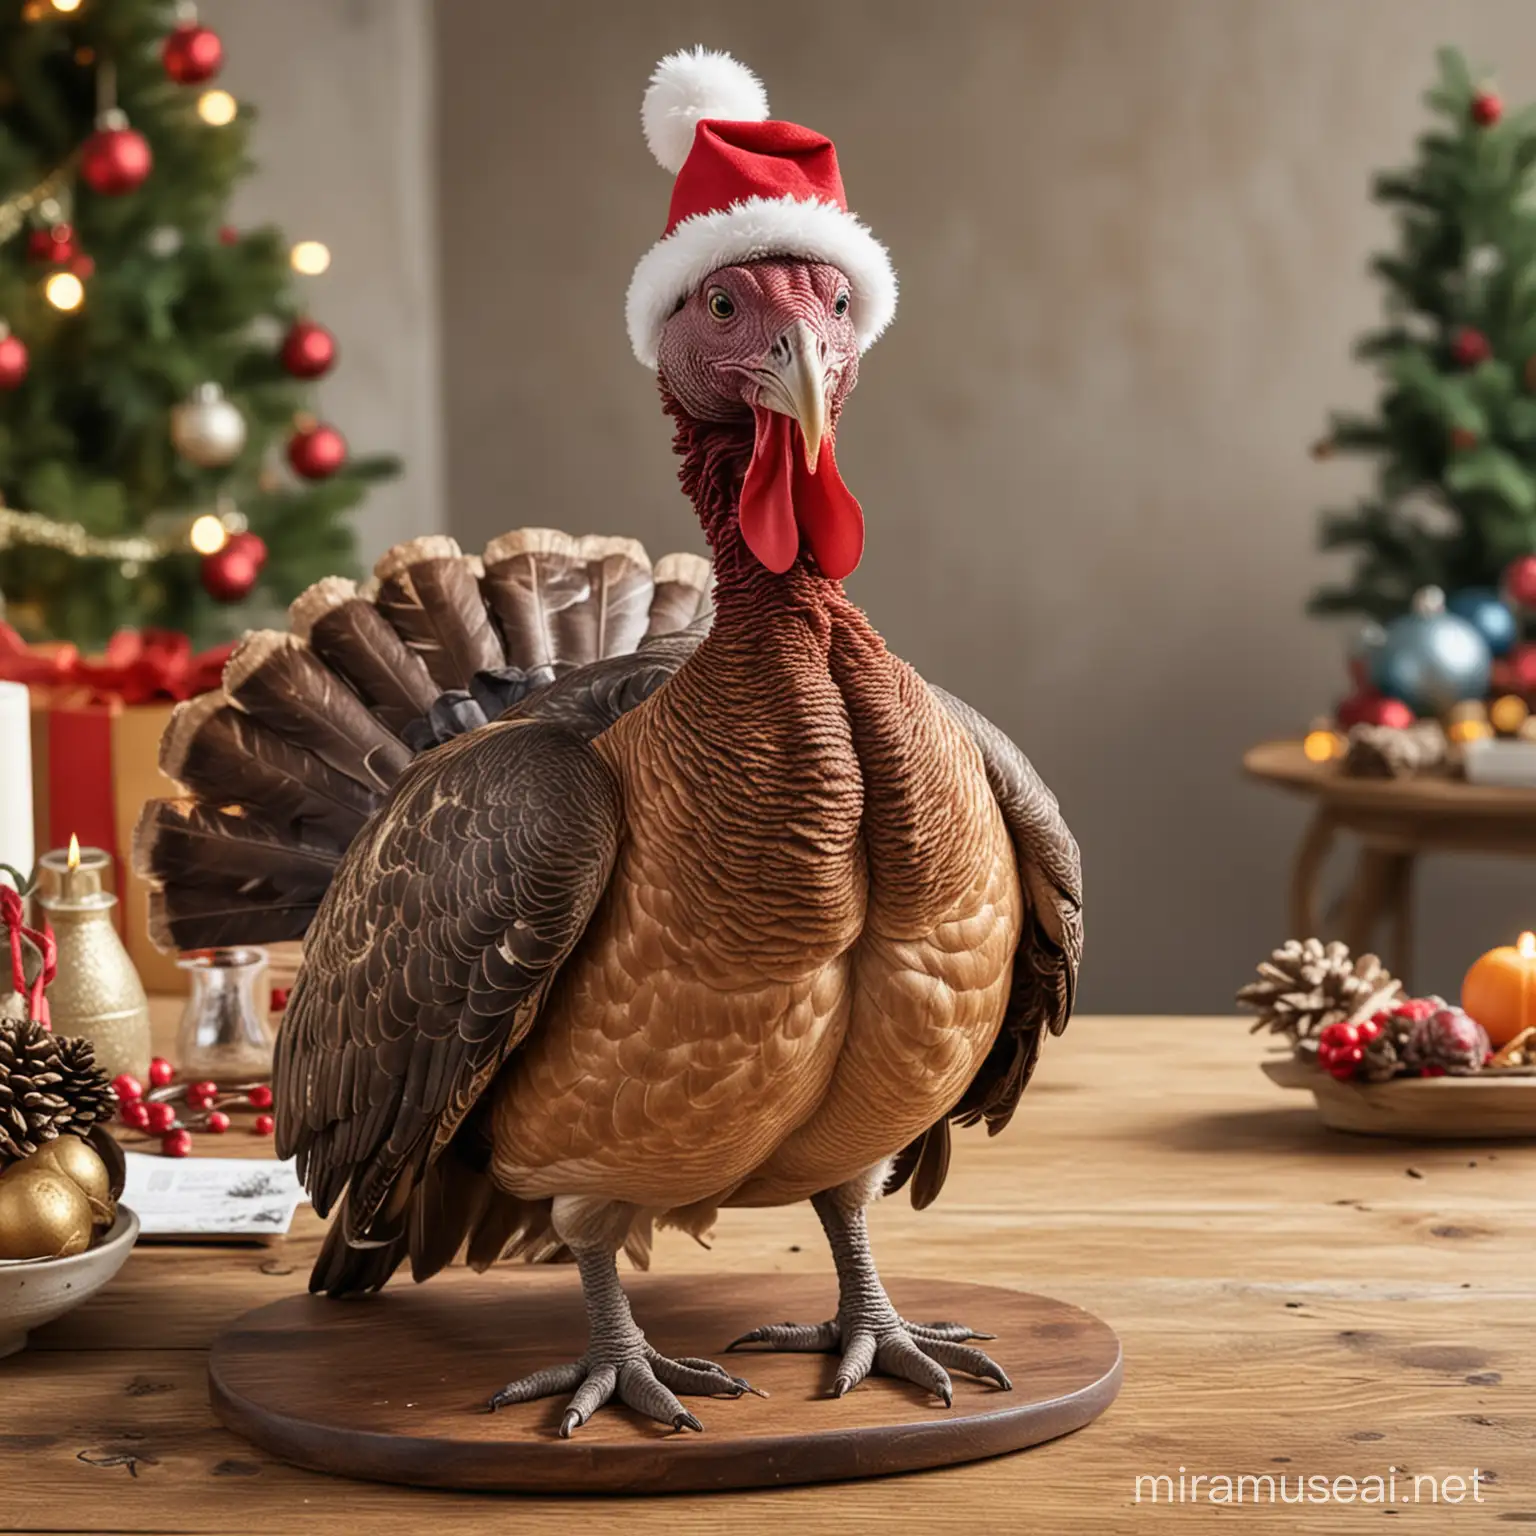 Prehistoric Turkey in Holiday Attire